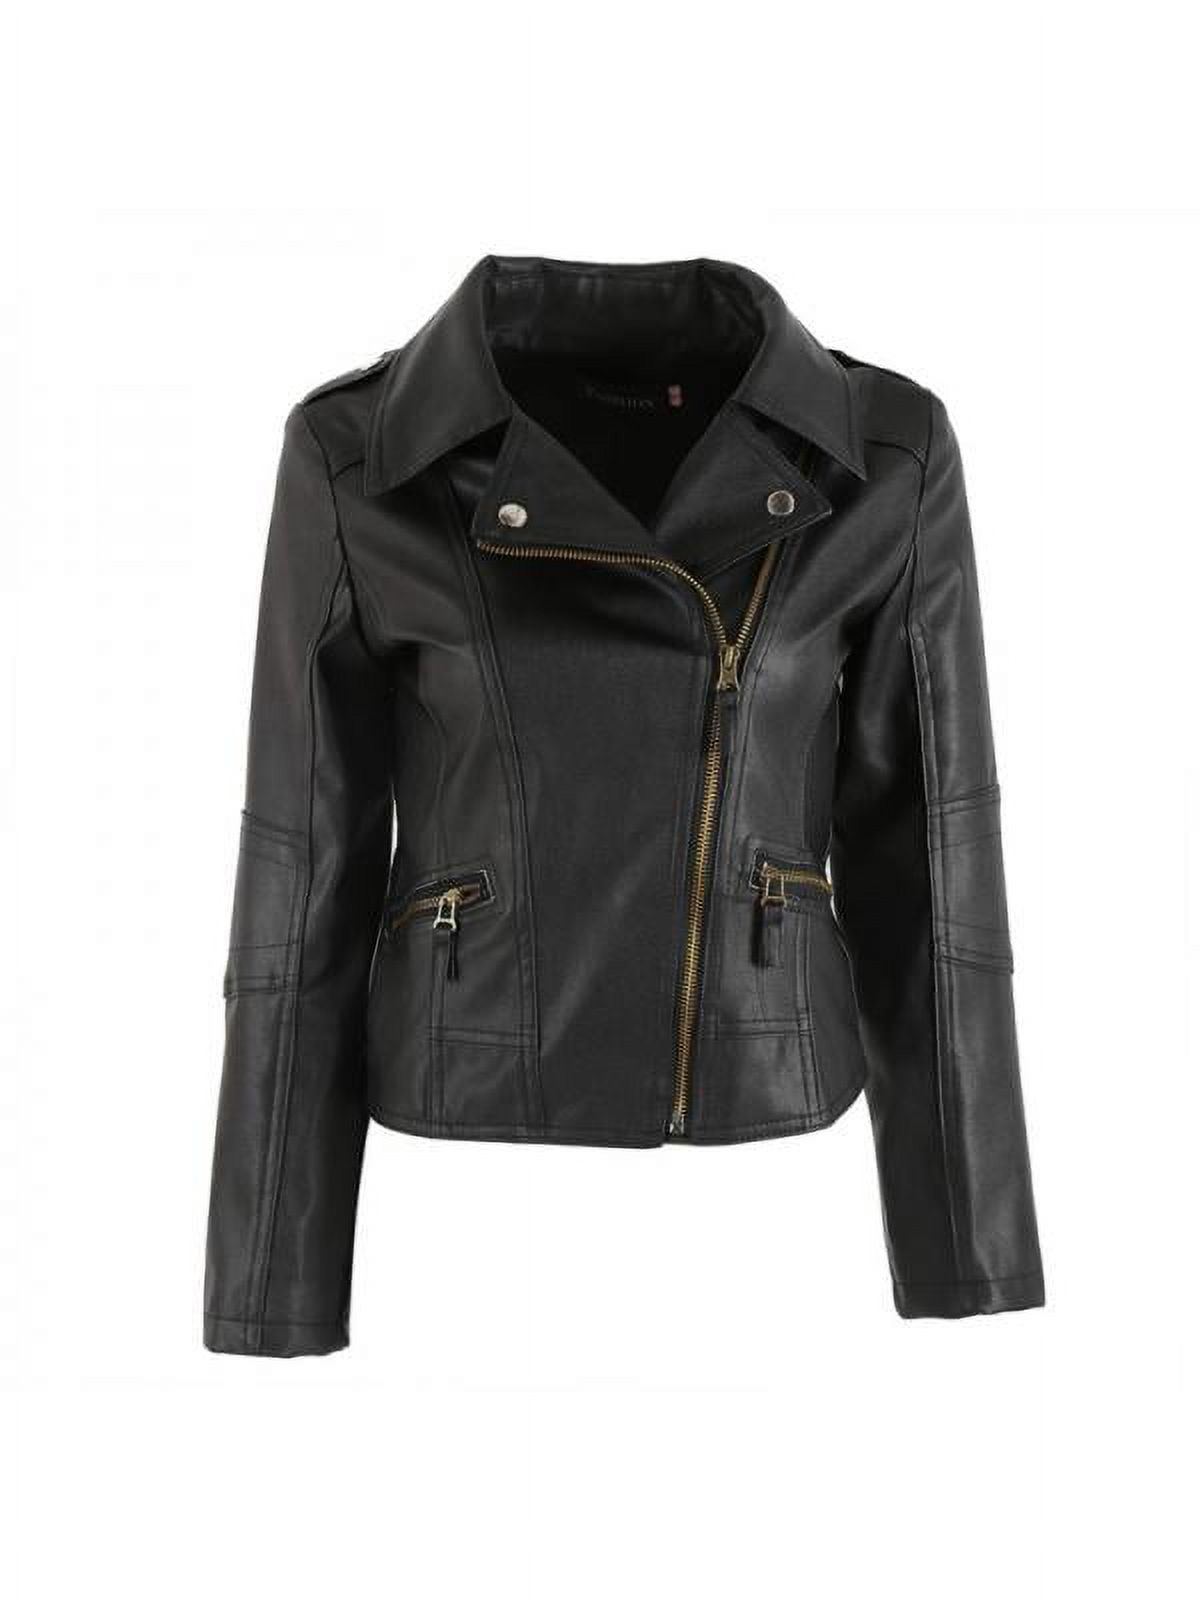 Luxsea Fashion Women Leather Motorcycle Zipper Punk Coat Biker Jacket Lady Autumn Winter Outwear - image 1 of 6